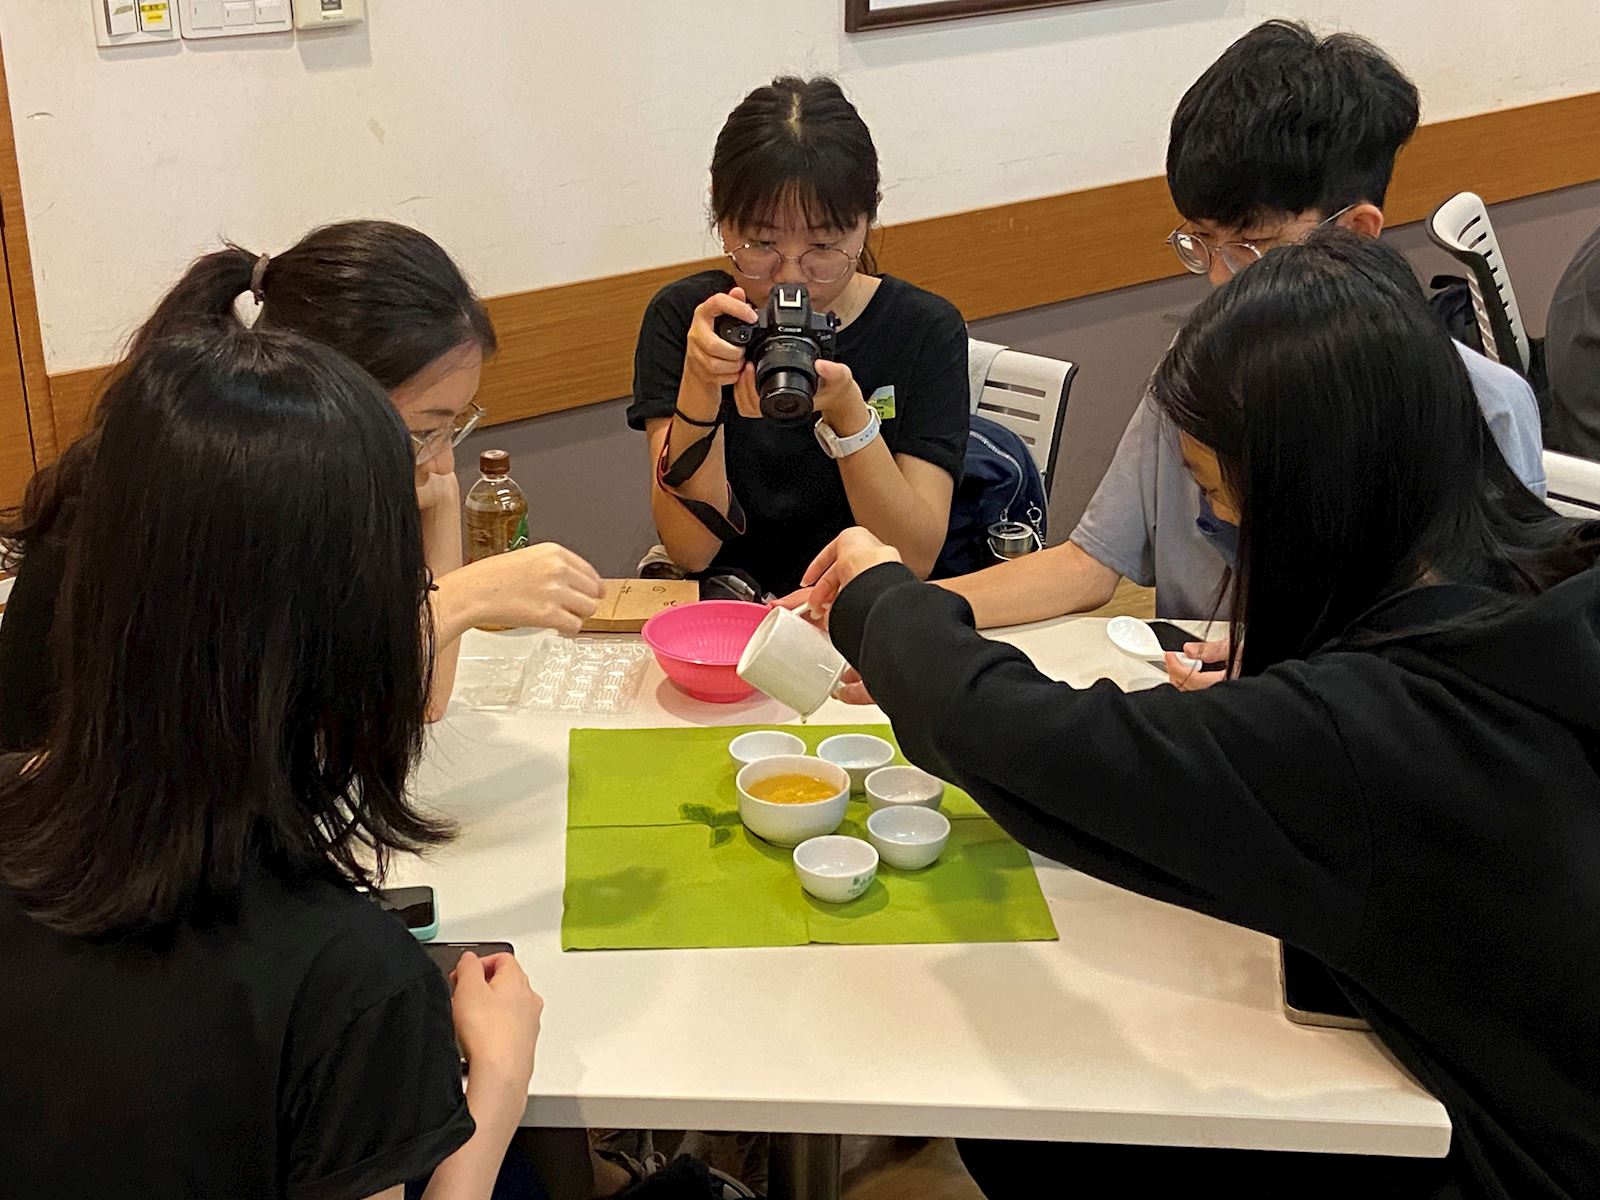 活動參與的學員們體驗泡茶、品茶的茶藝文化。